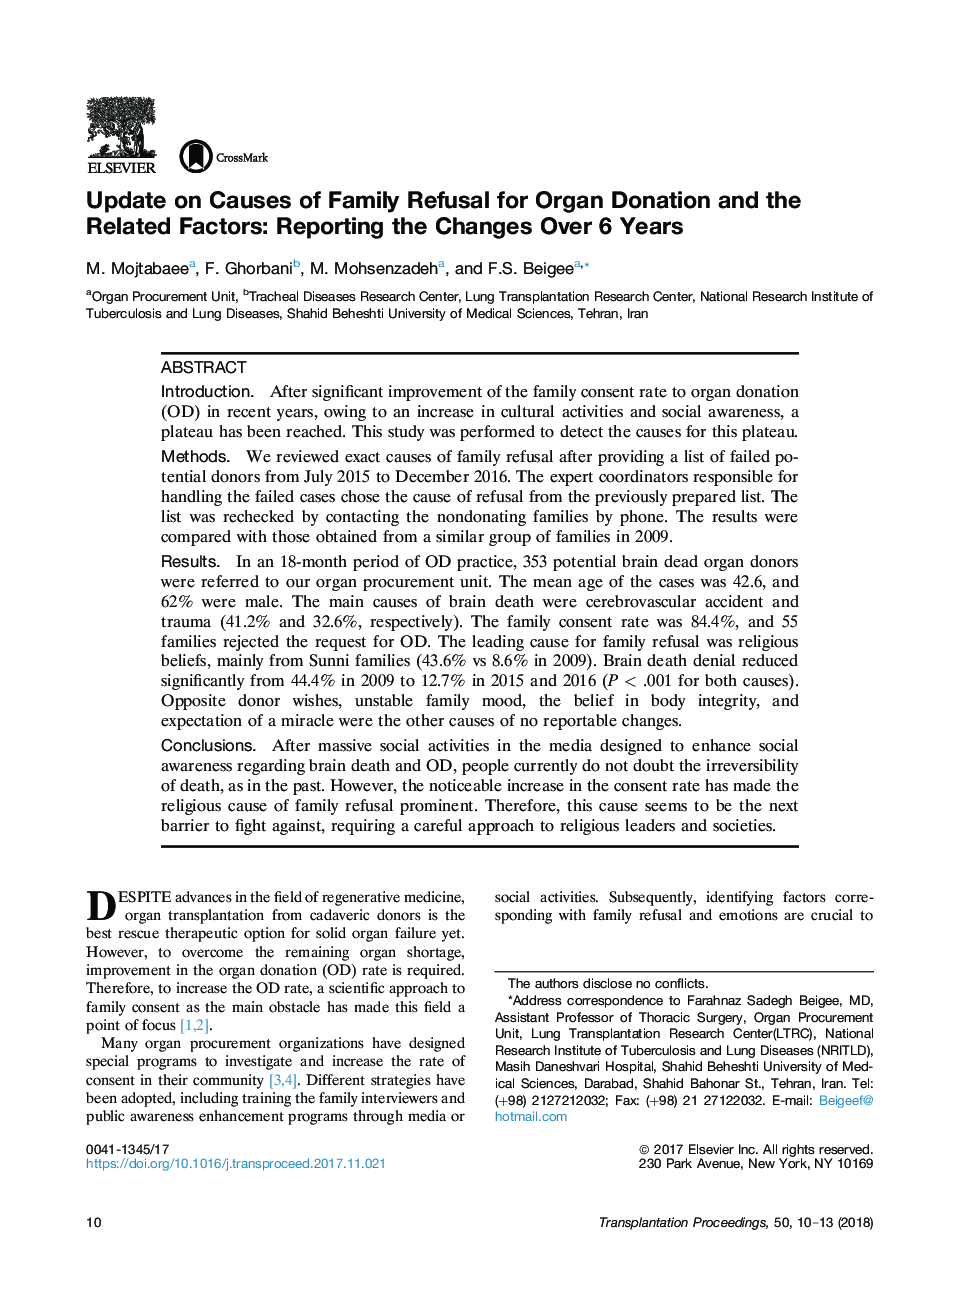 به روز رسانی در مورد علل عدم رعایت خانواده برای اهدای عضو و عوامل مرتبط: گزارش تغییرات بیش از 6 سال 